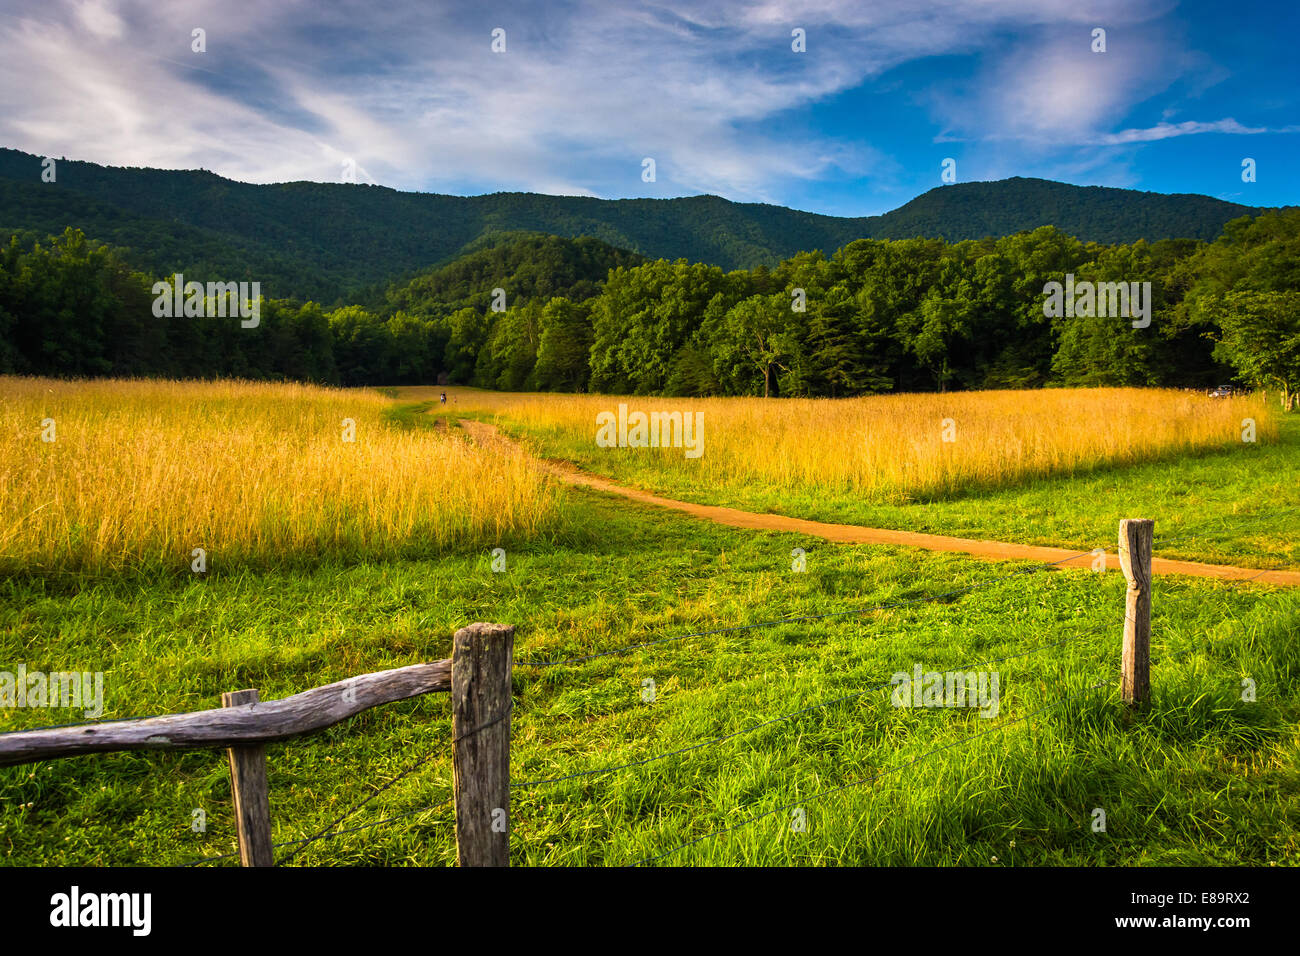 Clôture et champ à Cade's Cove, parc national des Great Smoky Mountains, New York. Banque D'Images